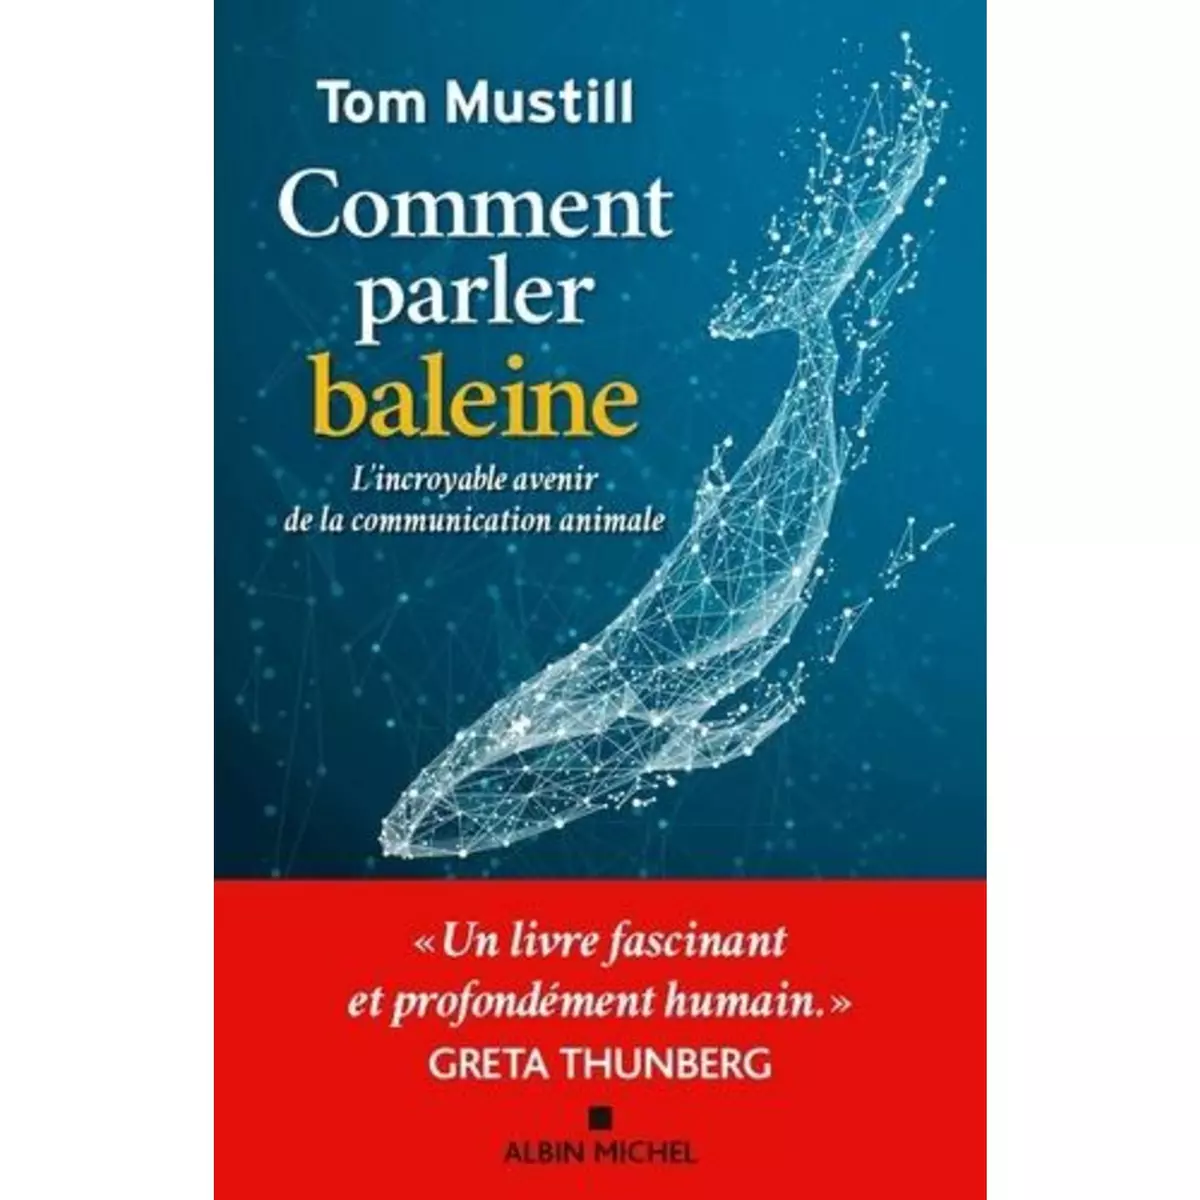  COMMENT PARLER BALEINE. L'INCROYABLE AVENIR DE LA COMMUNICATION ANIMALE, Mustill Tom